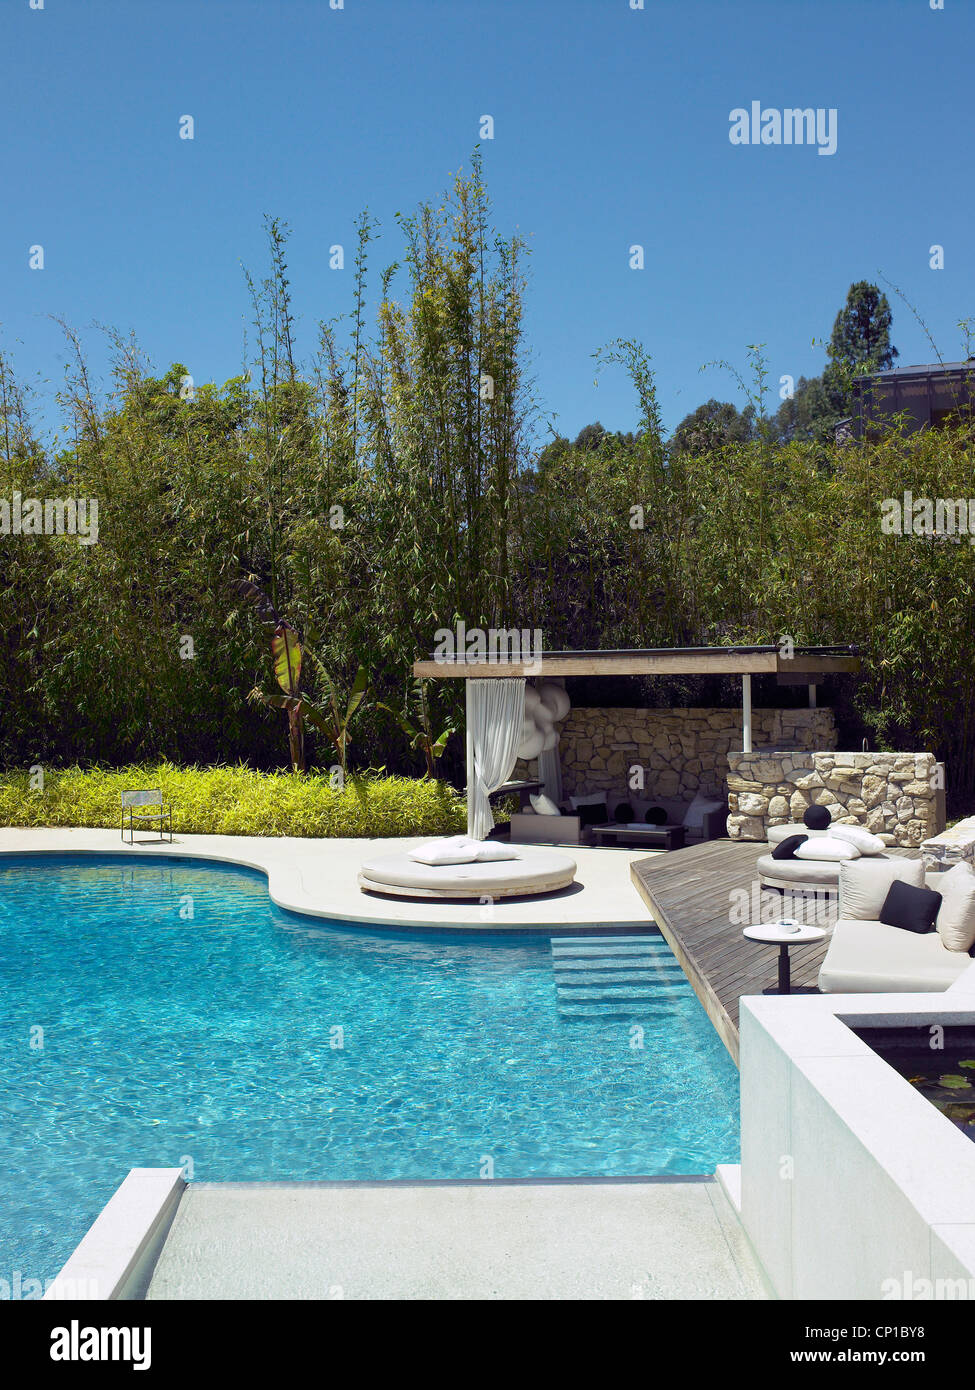 Schwimmbad des Ranch-Haus, Los Angeles, Kalifornien, USA Stockfotografie -  Alamy